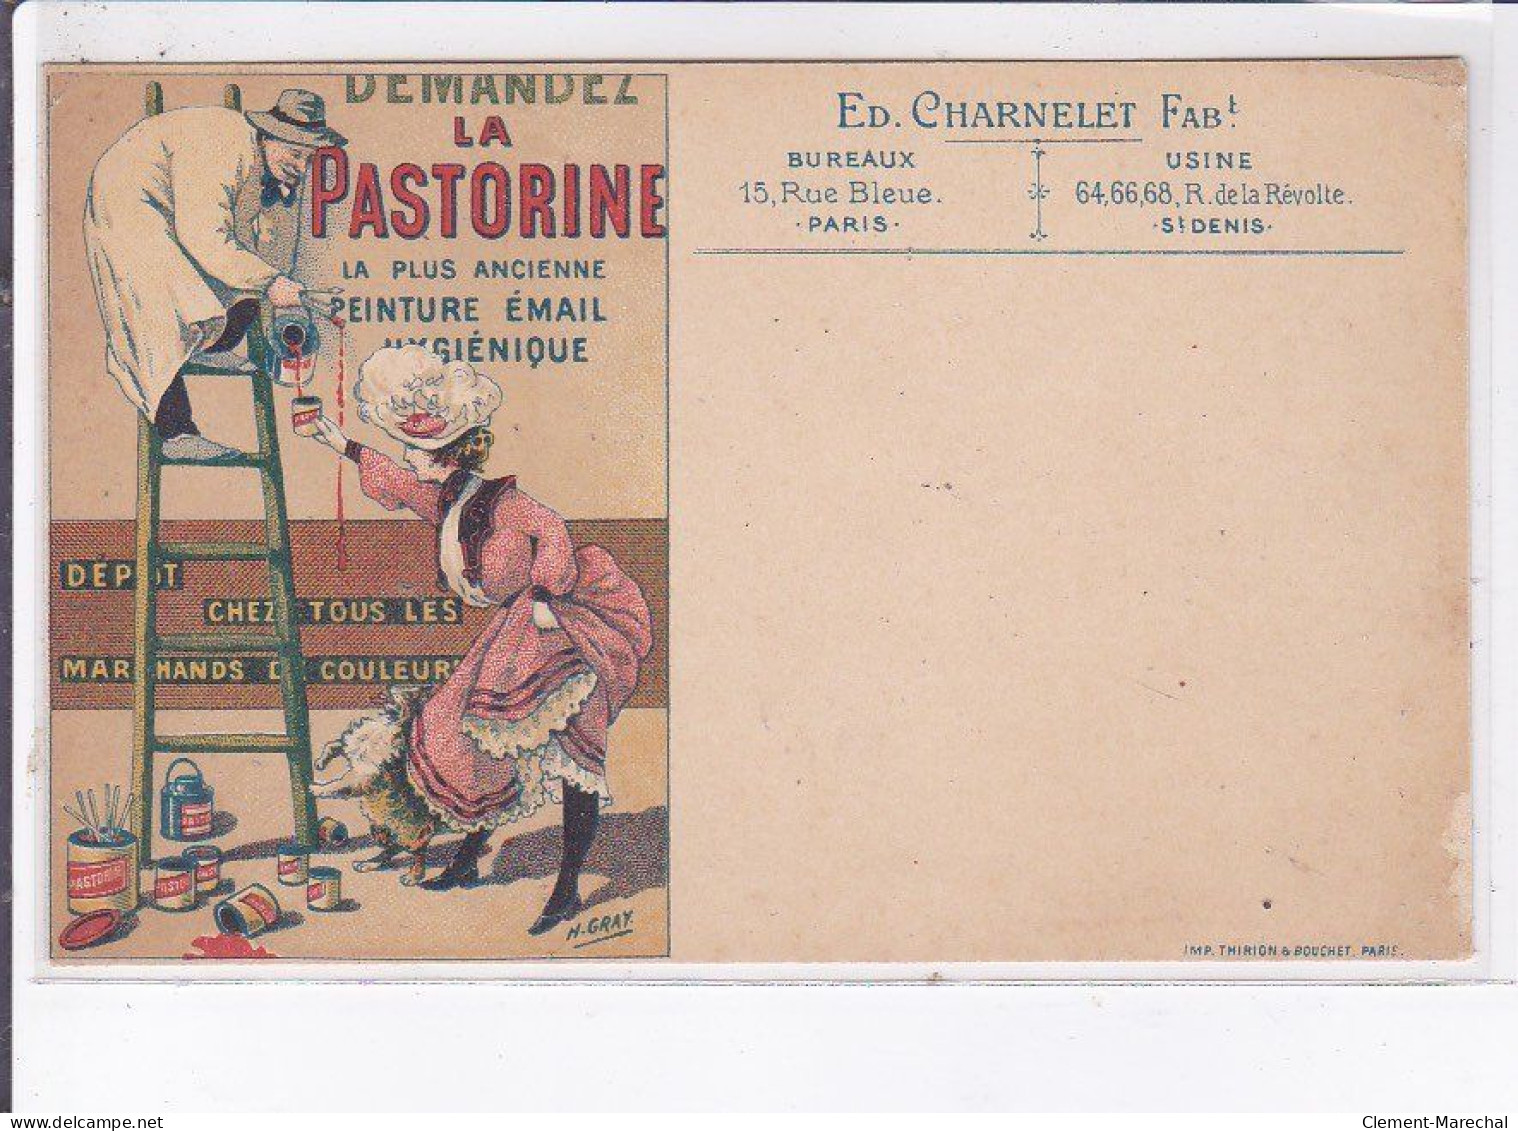 PUBLICITE : Demandez La Pastorine (peinture Email) Illustrée Par Gray - état - Advertising